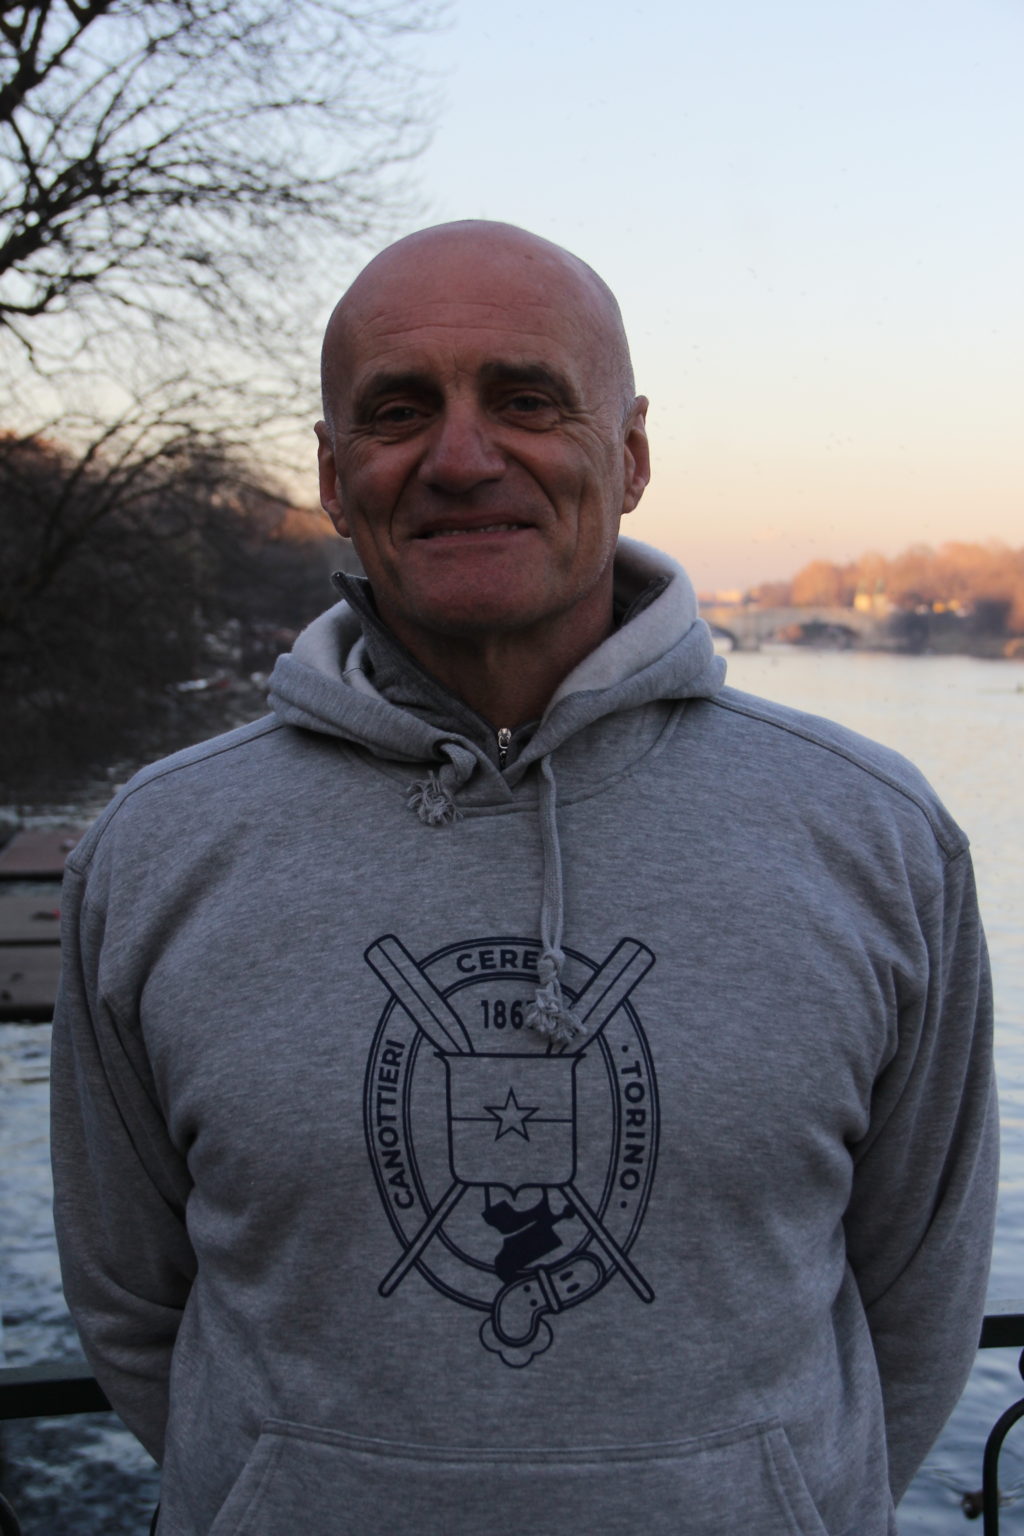 GIUSEPPE CARANDO - Allenatore della squadra agonistica Cerea dal 2016 al 2022 - ex atleta azzurro - ha partecipato ai giochi olimpici del 1984 e del 1988